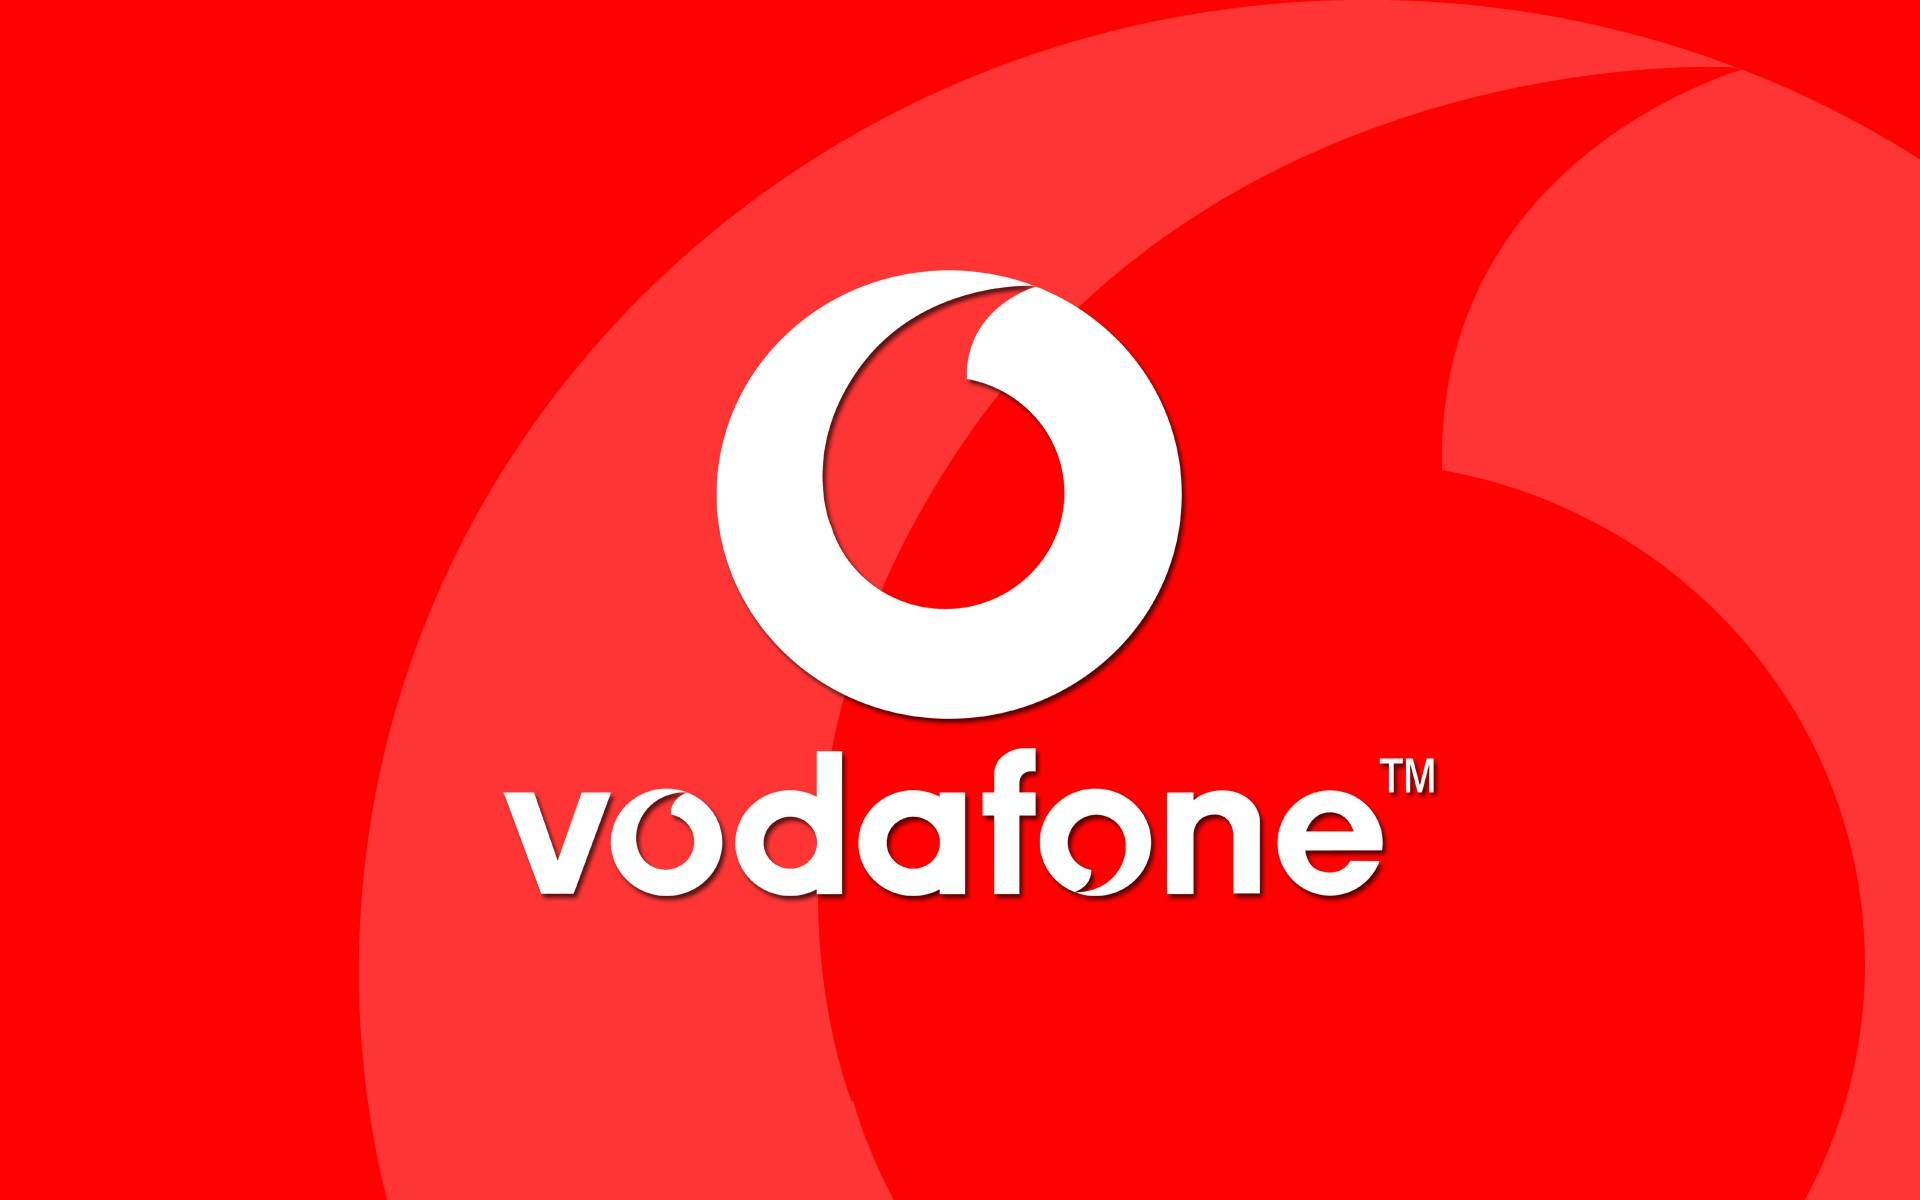 Eurooppalainen Vodafone